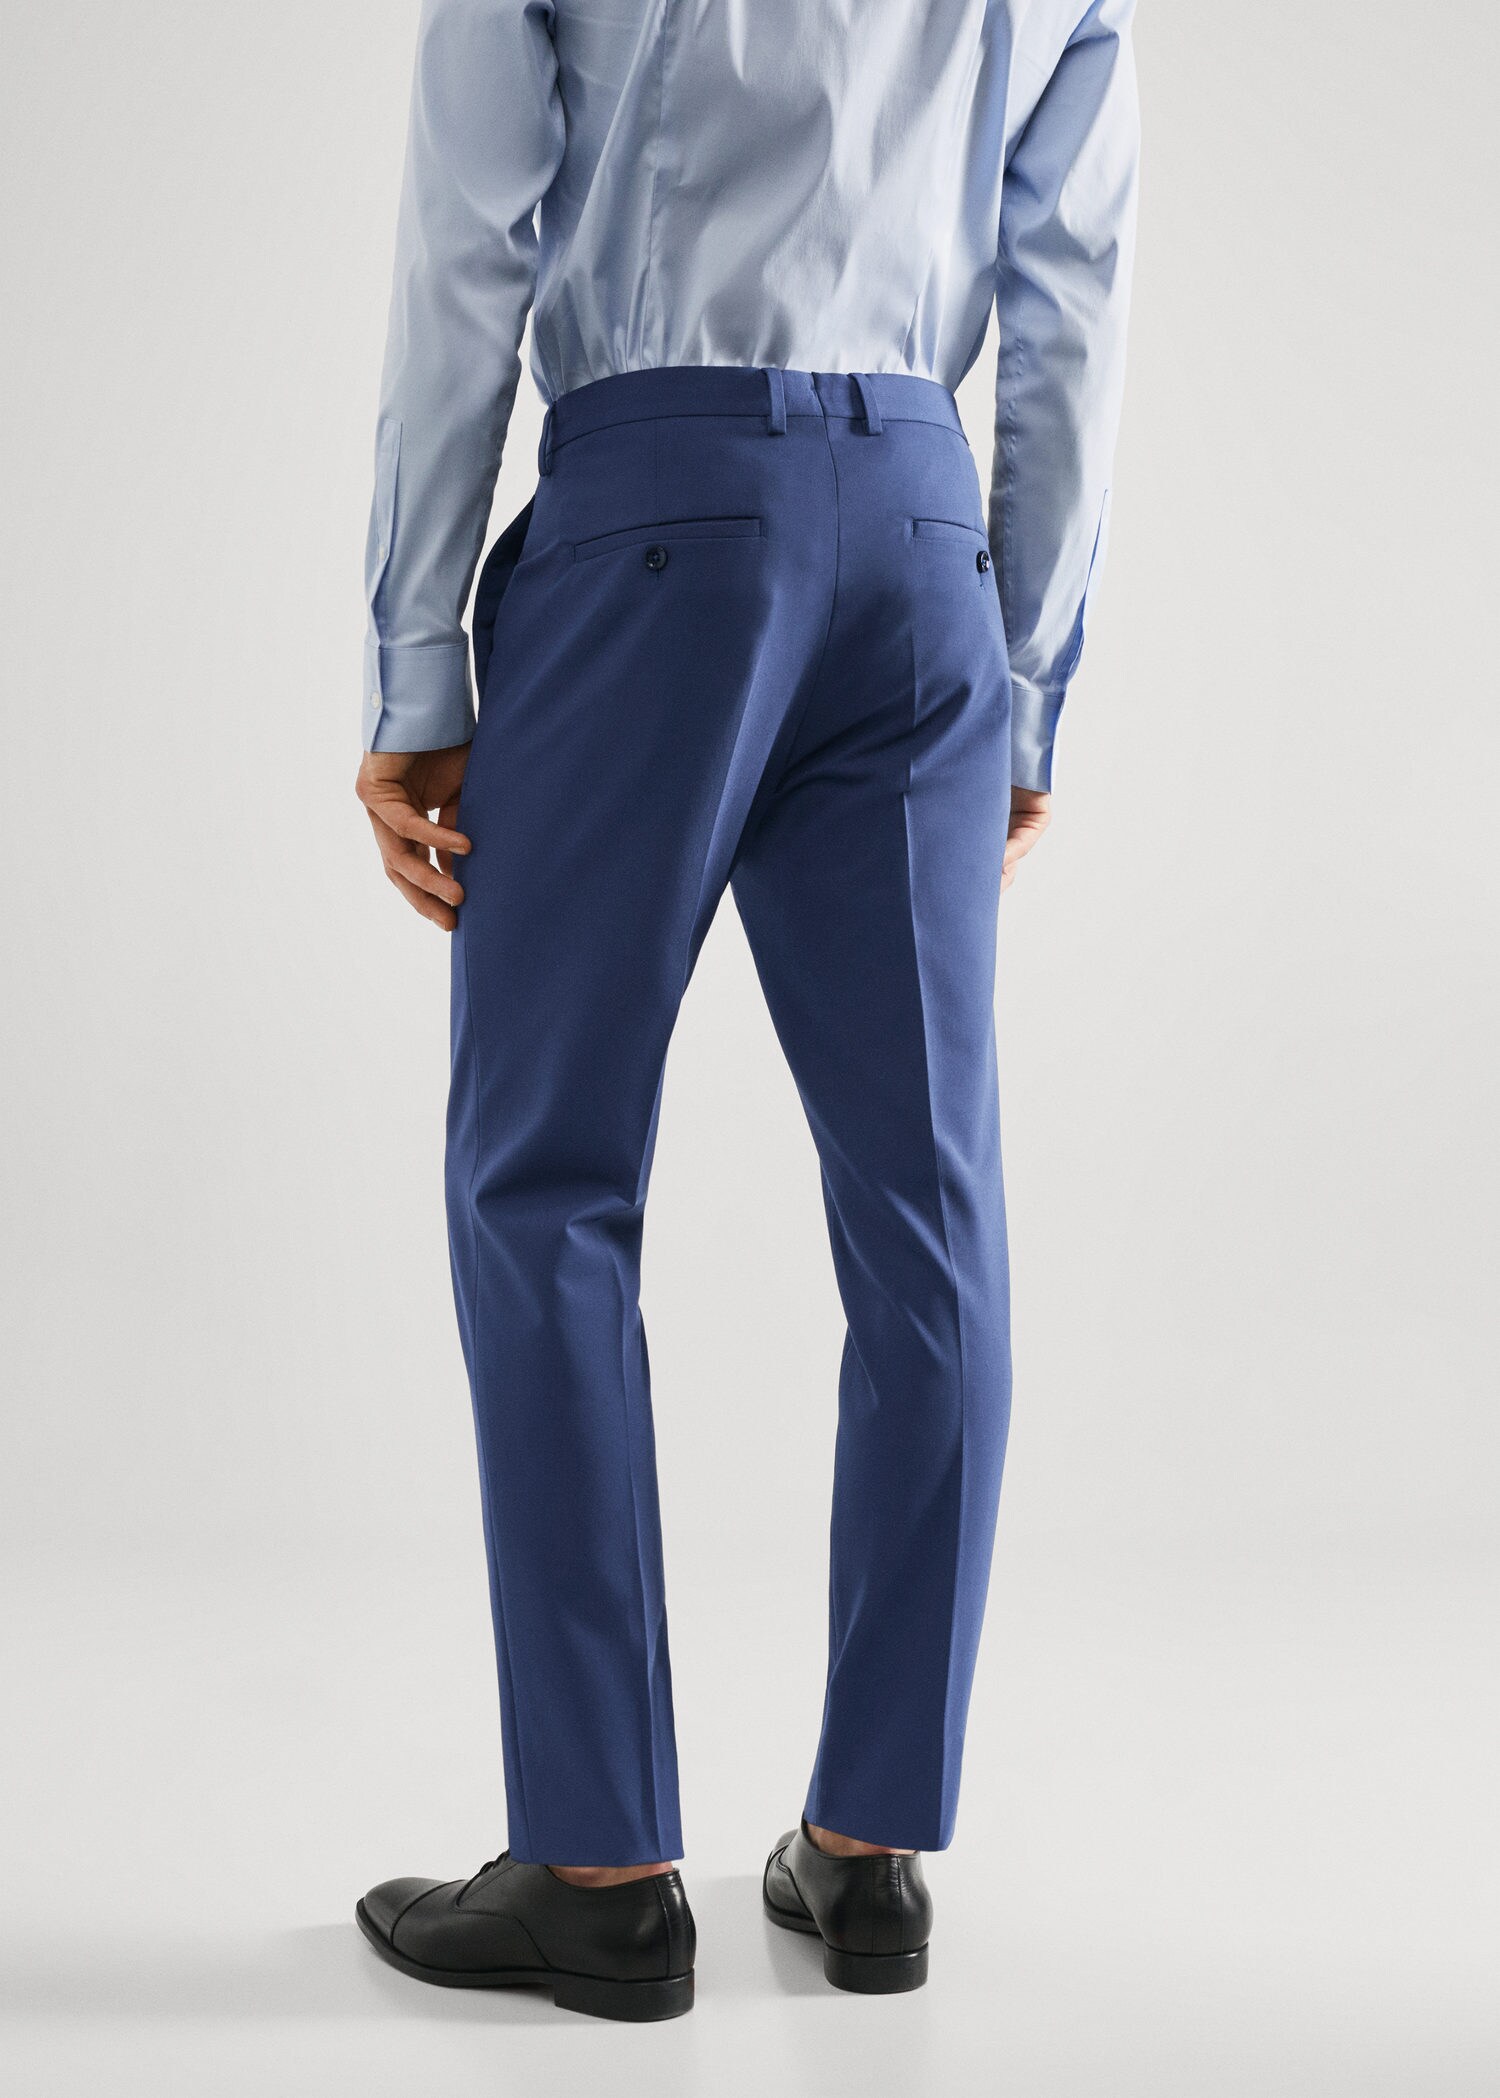 Haggar H26 Men's Premium Stretch Slim Fit Dress Pants - Midnight Blue 32x32  : Target